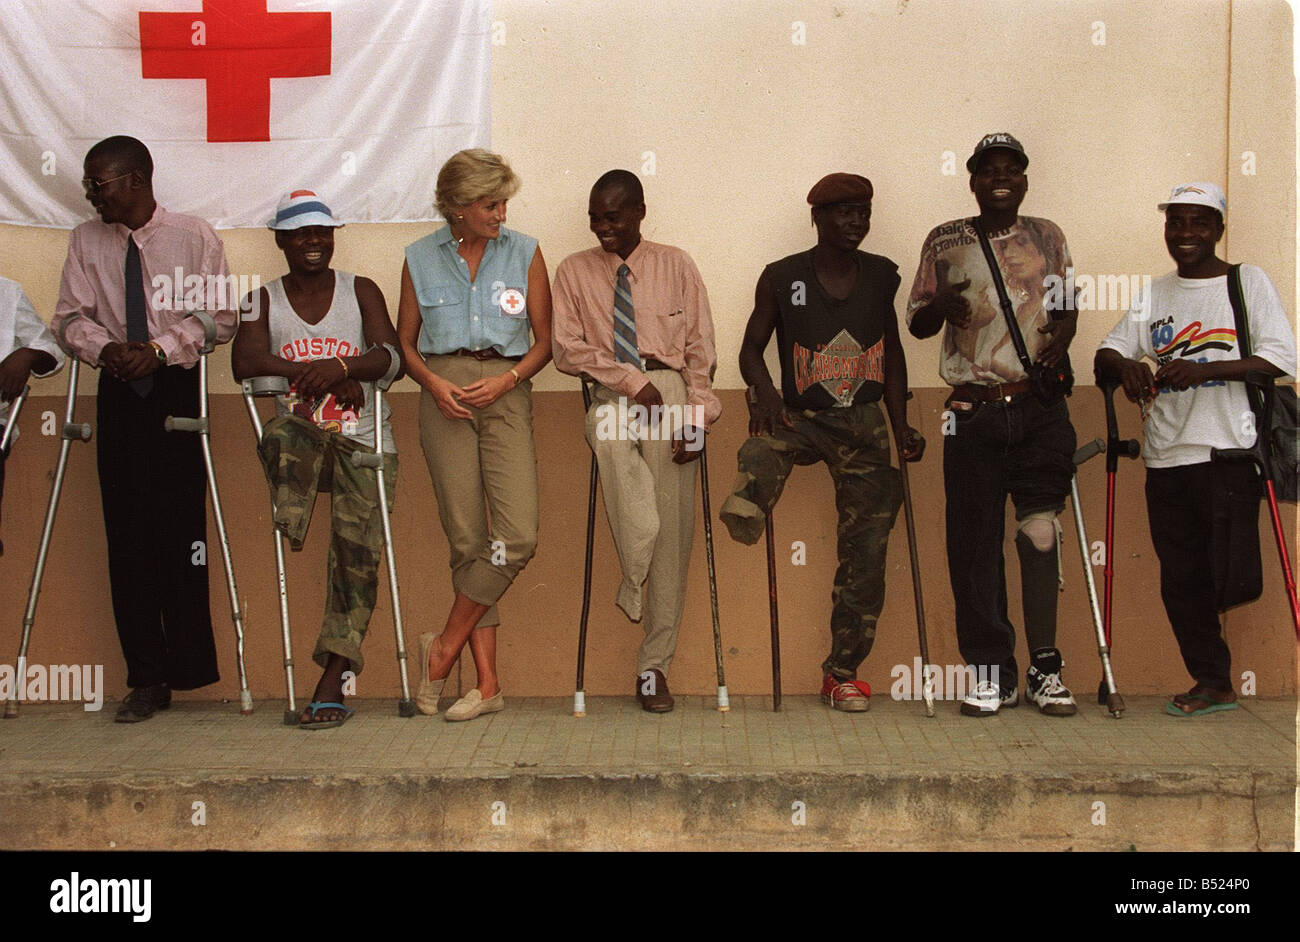 Princess Diana visiting landmine victims at the orthopaedic centre at Ruanda Angola War Conflict Angola Civil War Amputees Crutches Royalty Princess Diana Princess of Wales Charity January 1997 1990s vanityfair0507 Stock Photo